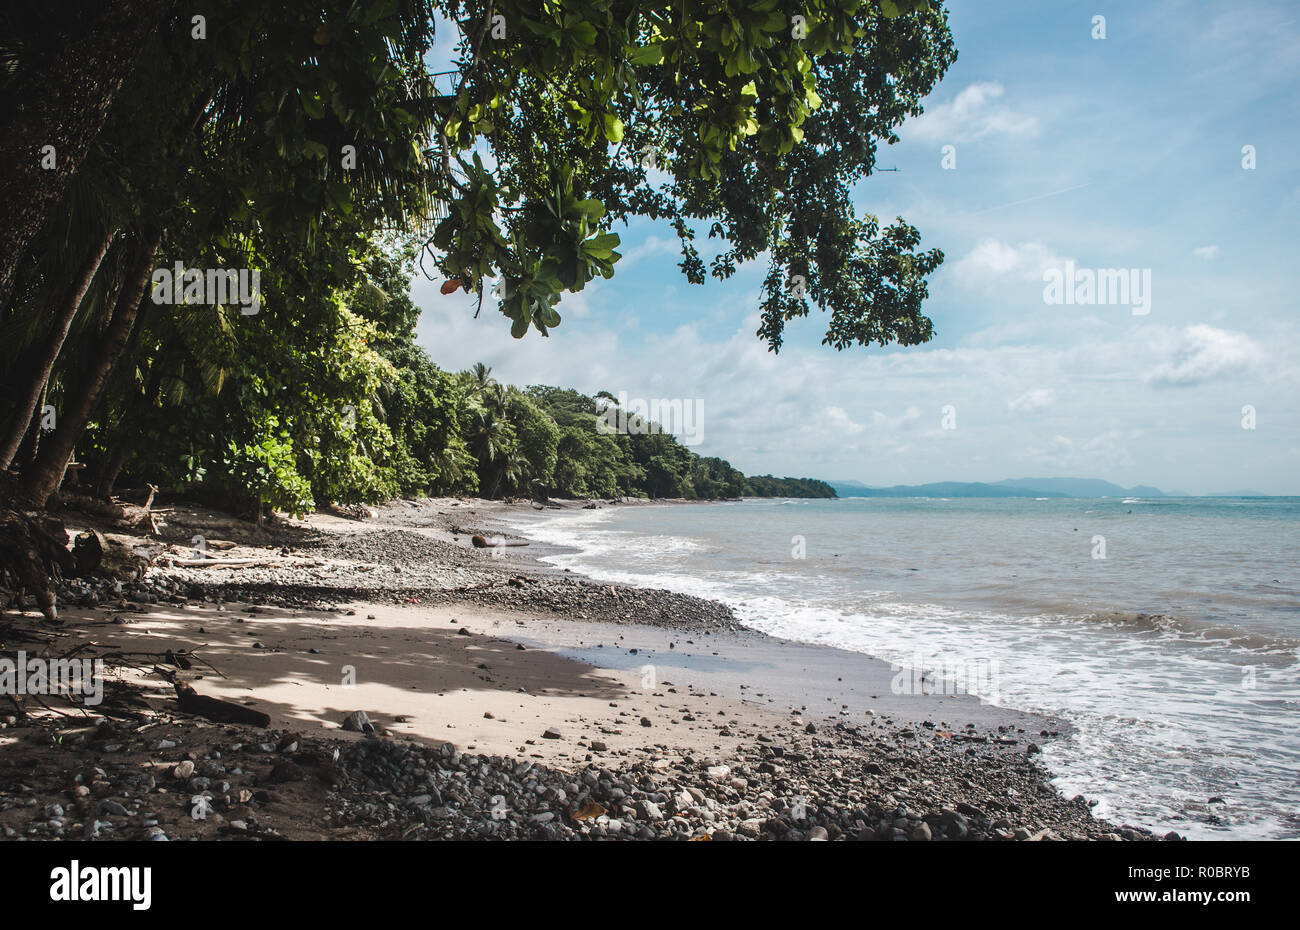 Dense forest gives way to a dark stony beach on the cape of the Nicoya Peninsula in Costa Rica, near Manzanillo Stock Photo